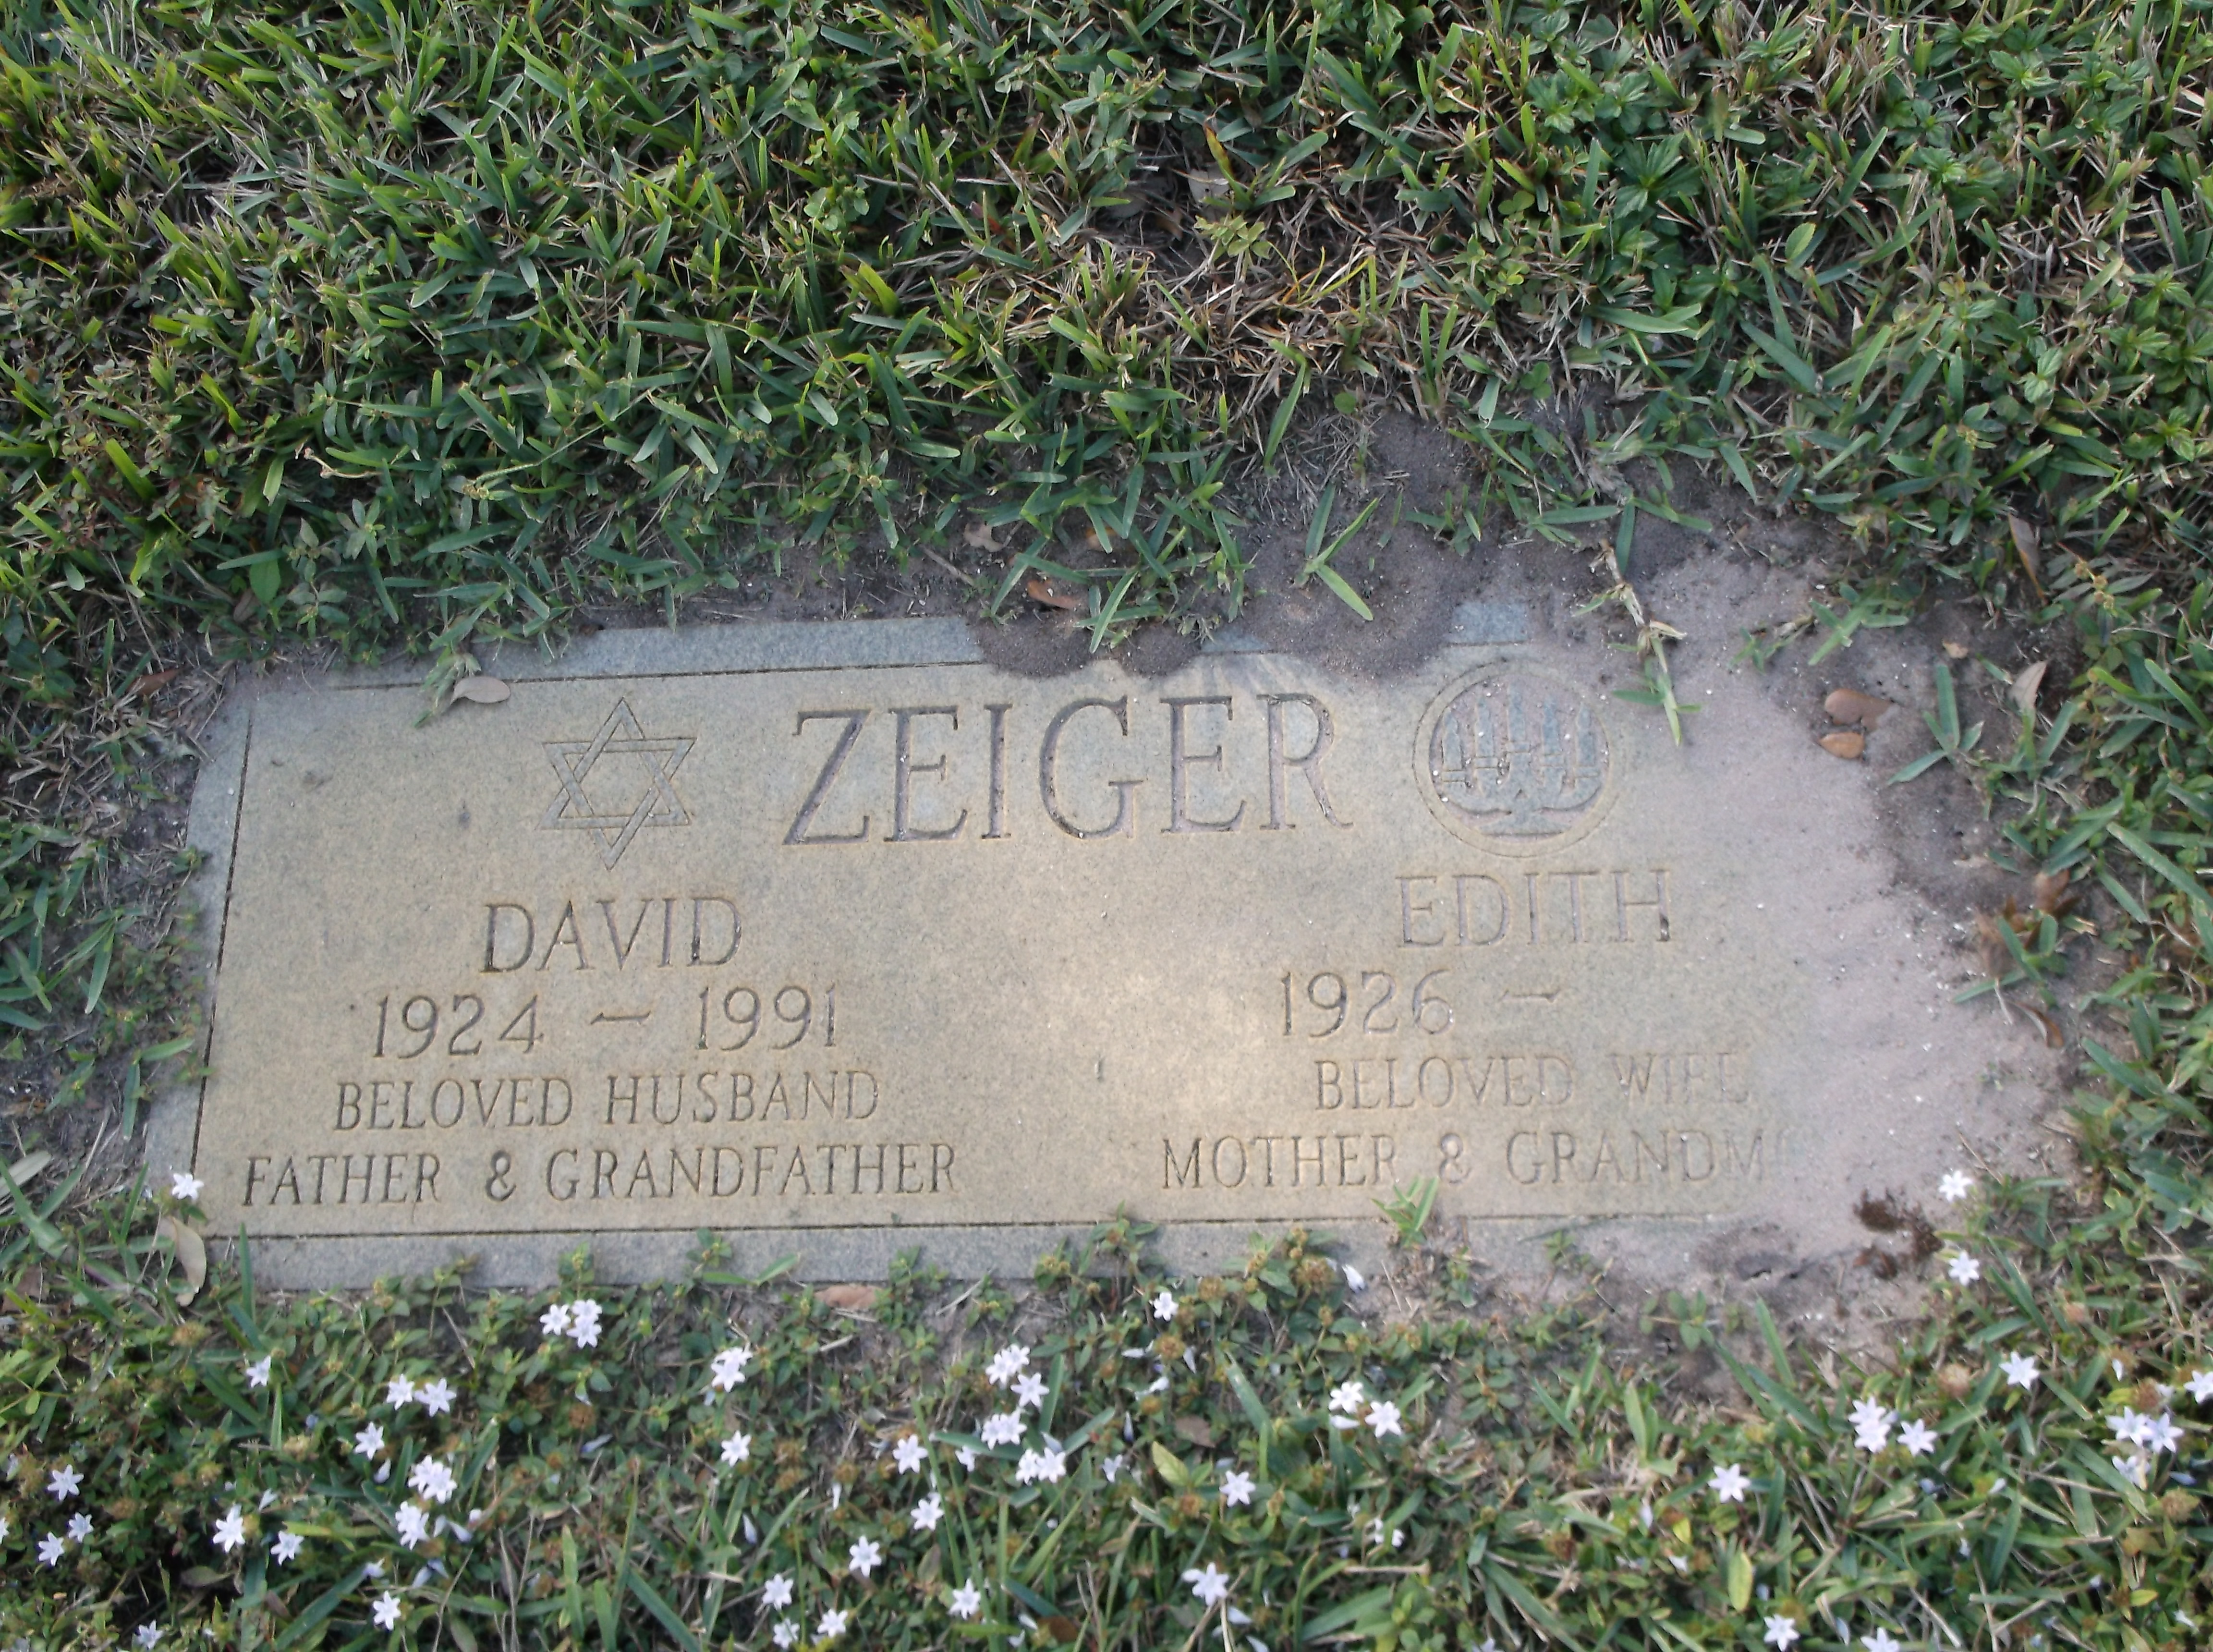 David Zeiger